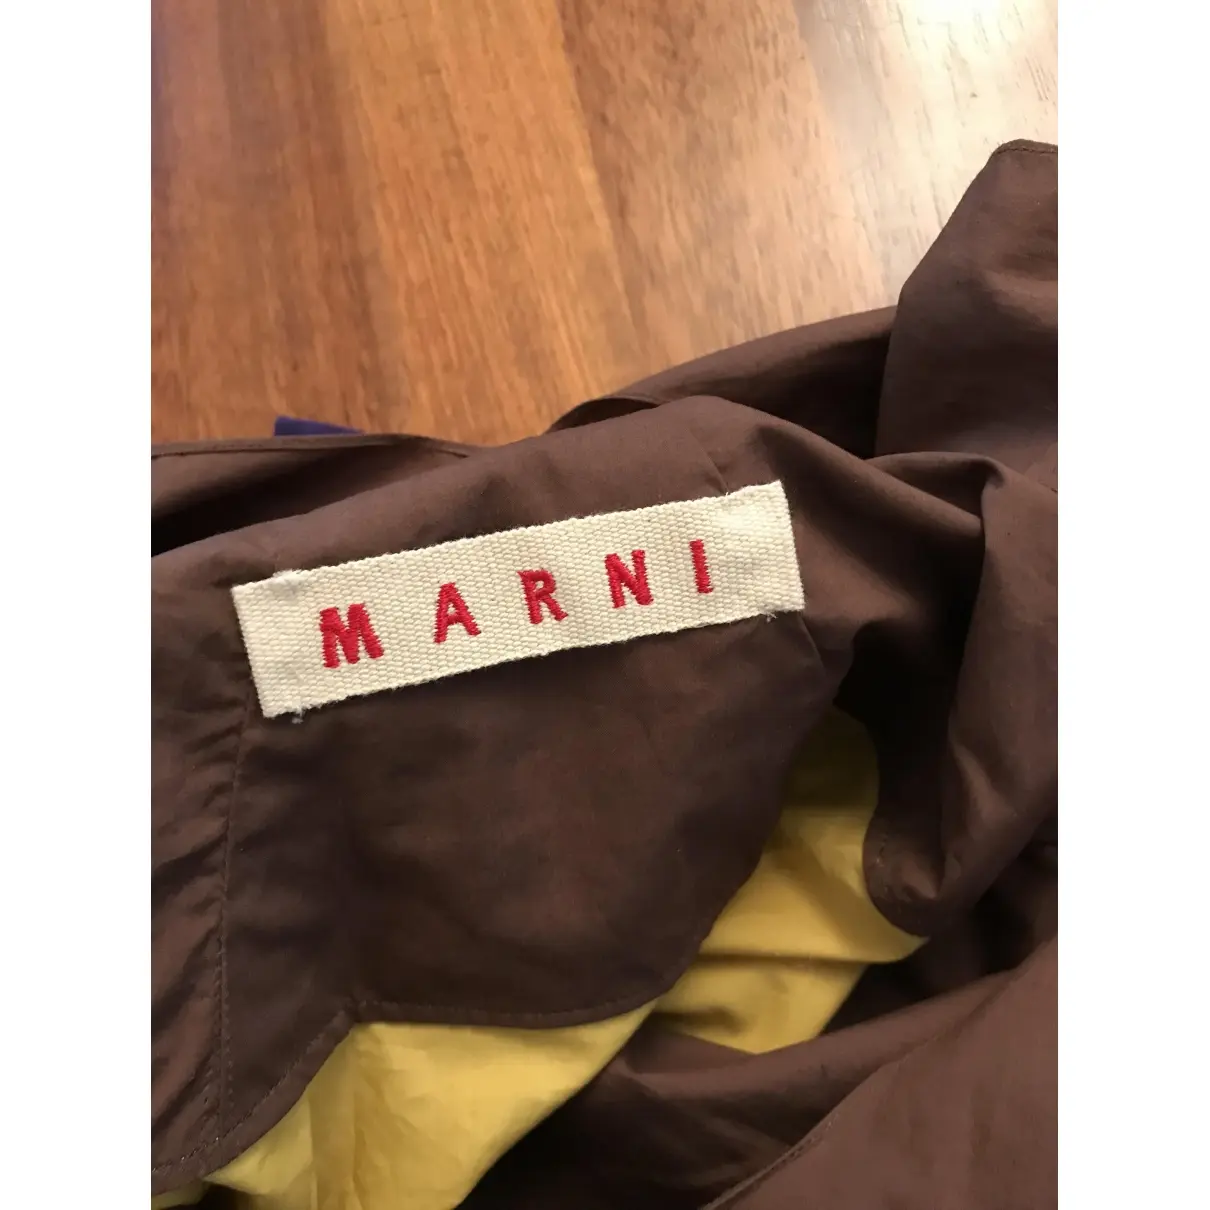 Buy Marni Top online